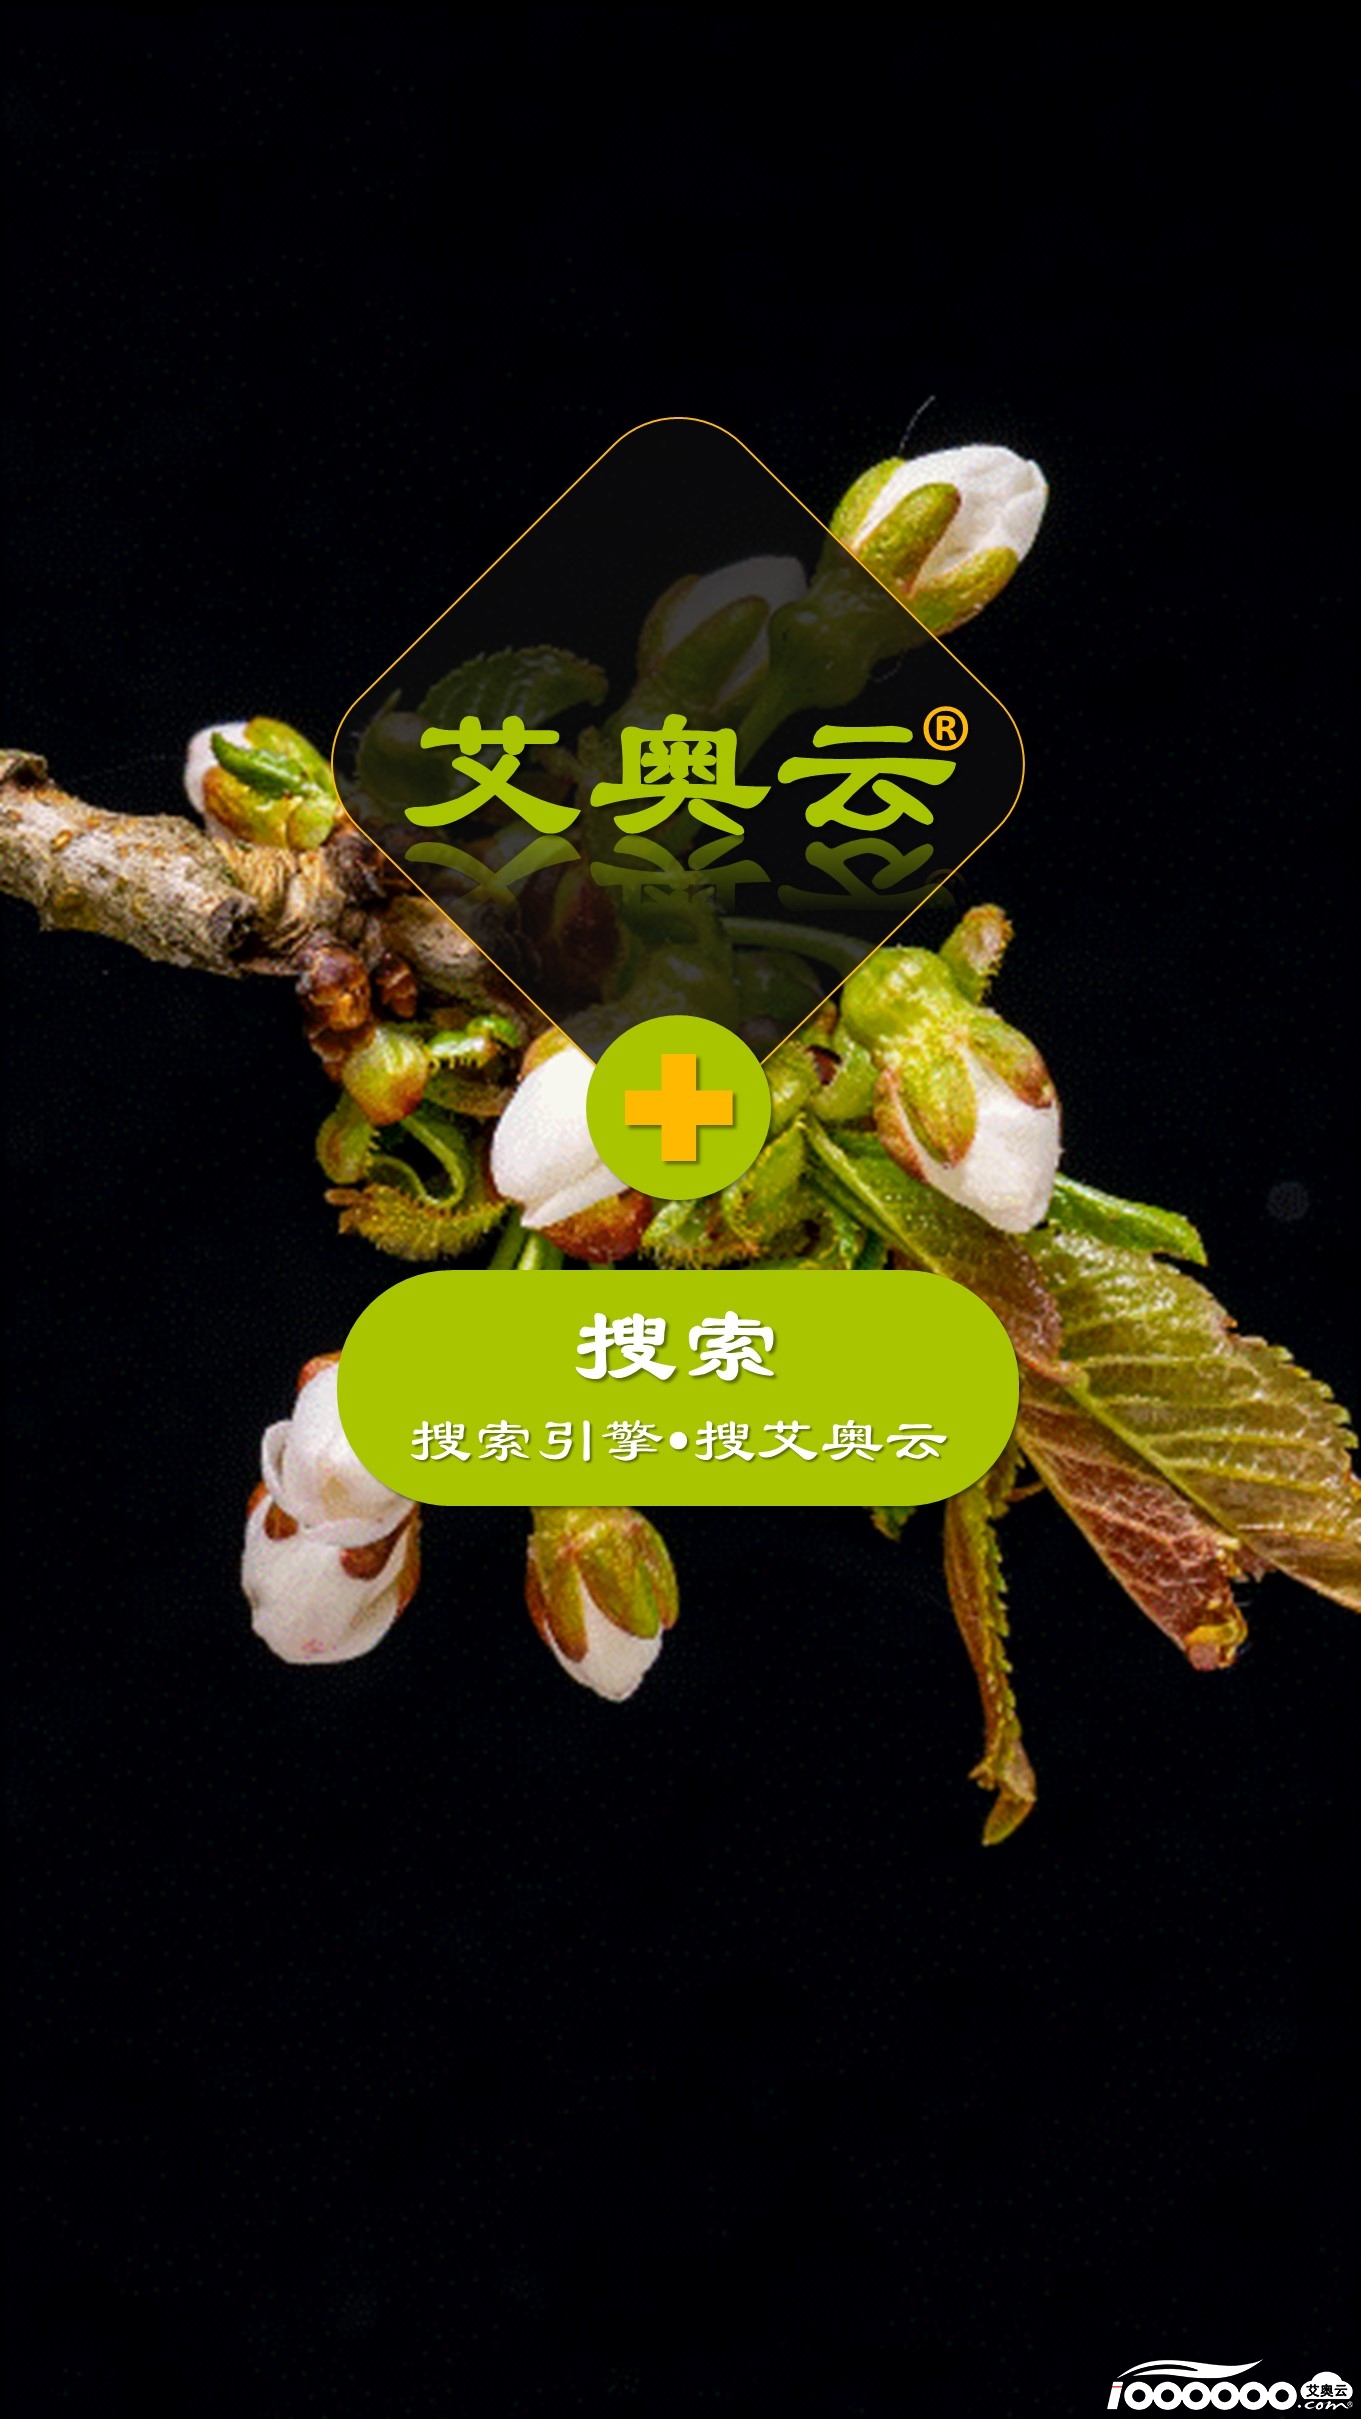 水果李子产品项目展示短视频模板动物世界背景音乐 (4).JPG